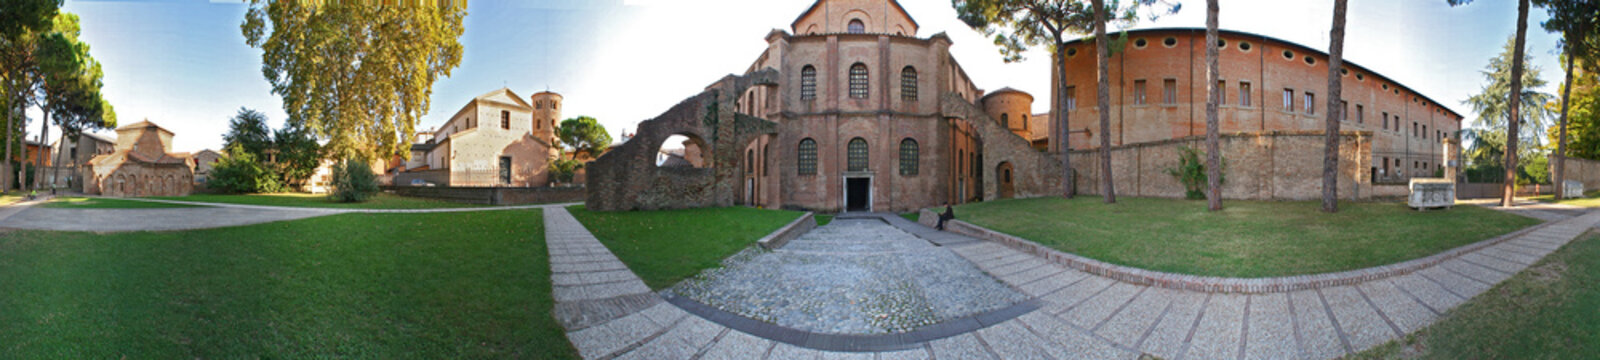 Ravenna, basilica San Vitale e mausoleo Gallia Placidia a 360°